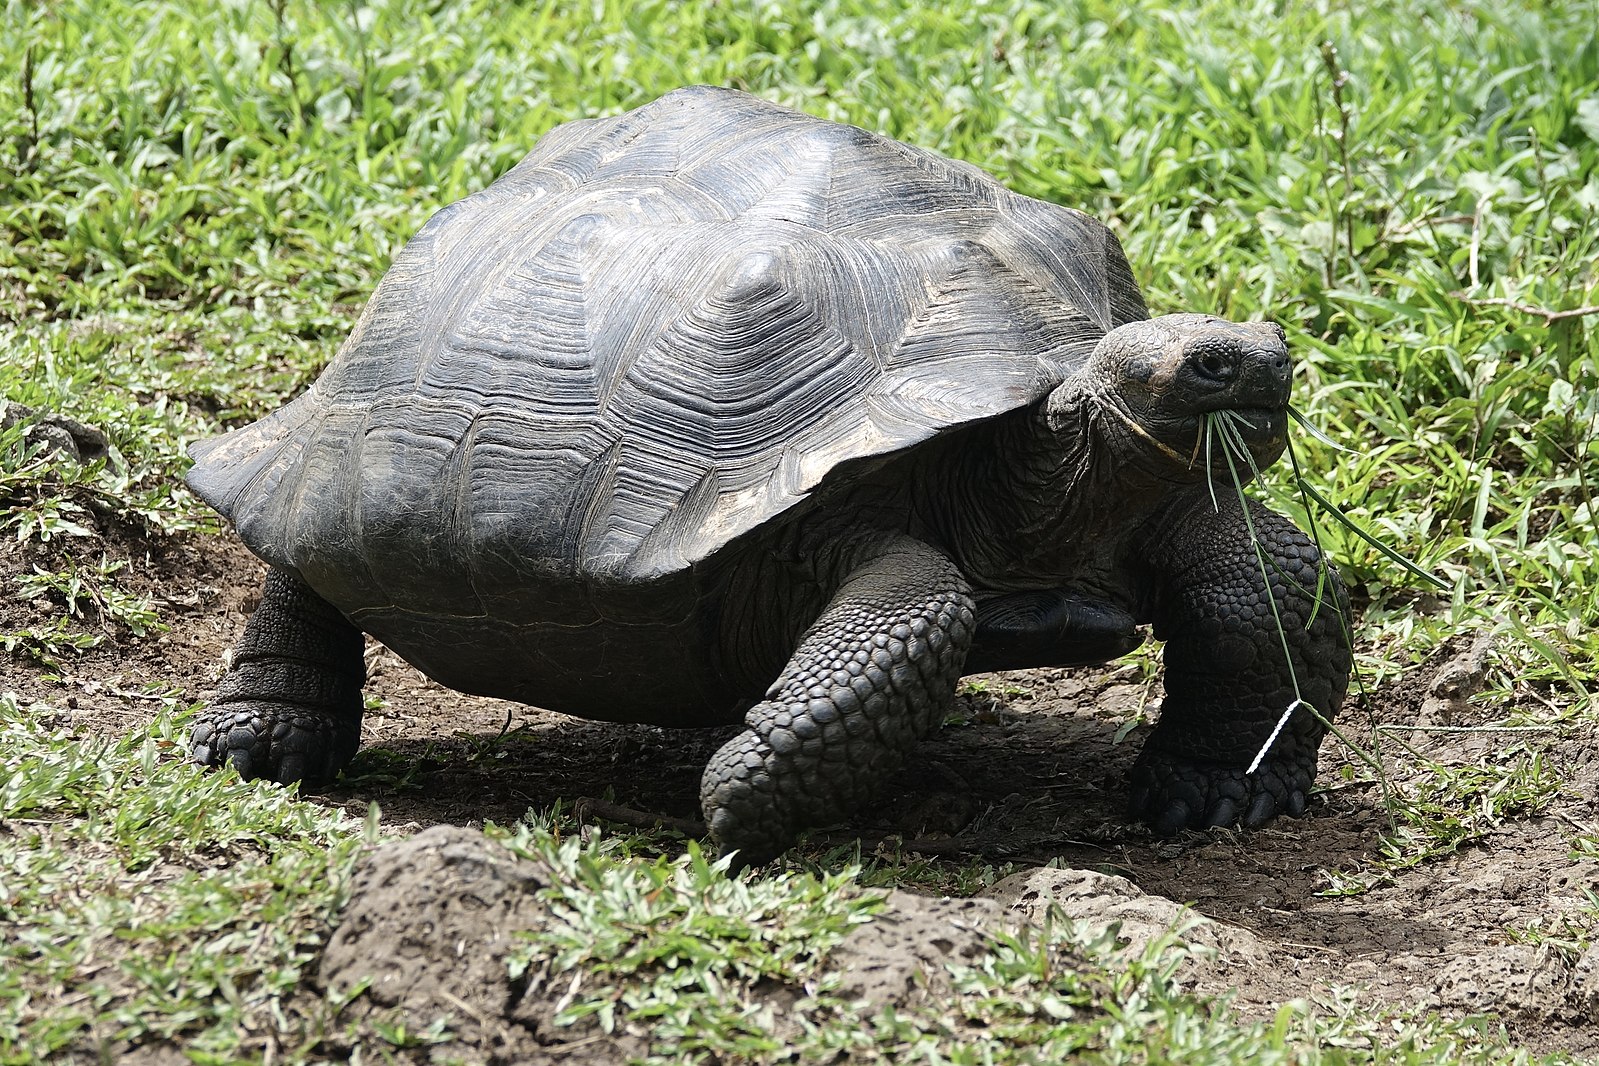 Dürfen Schildkröten Pflaumen essen?